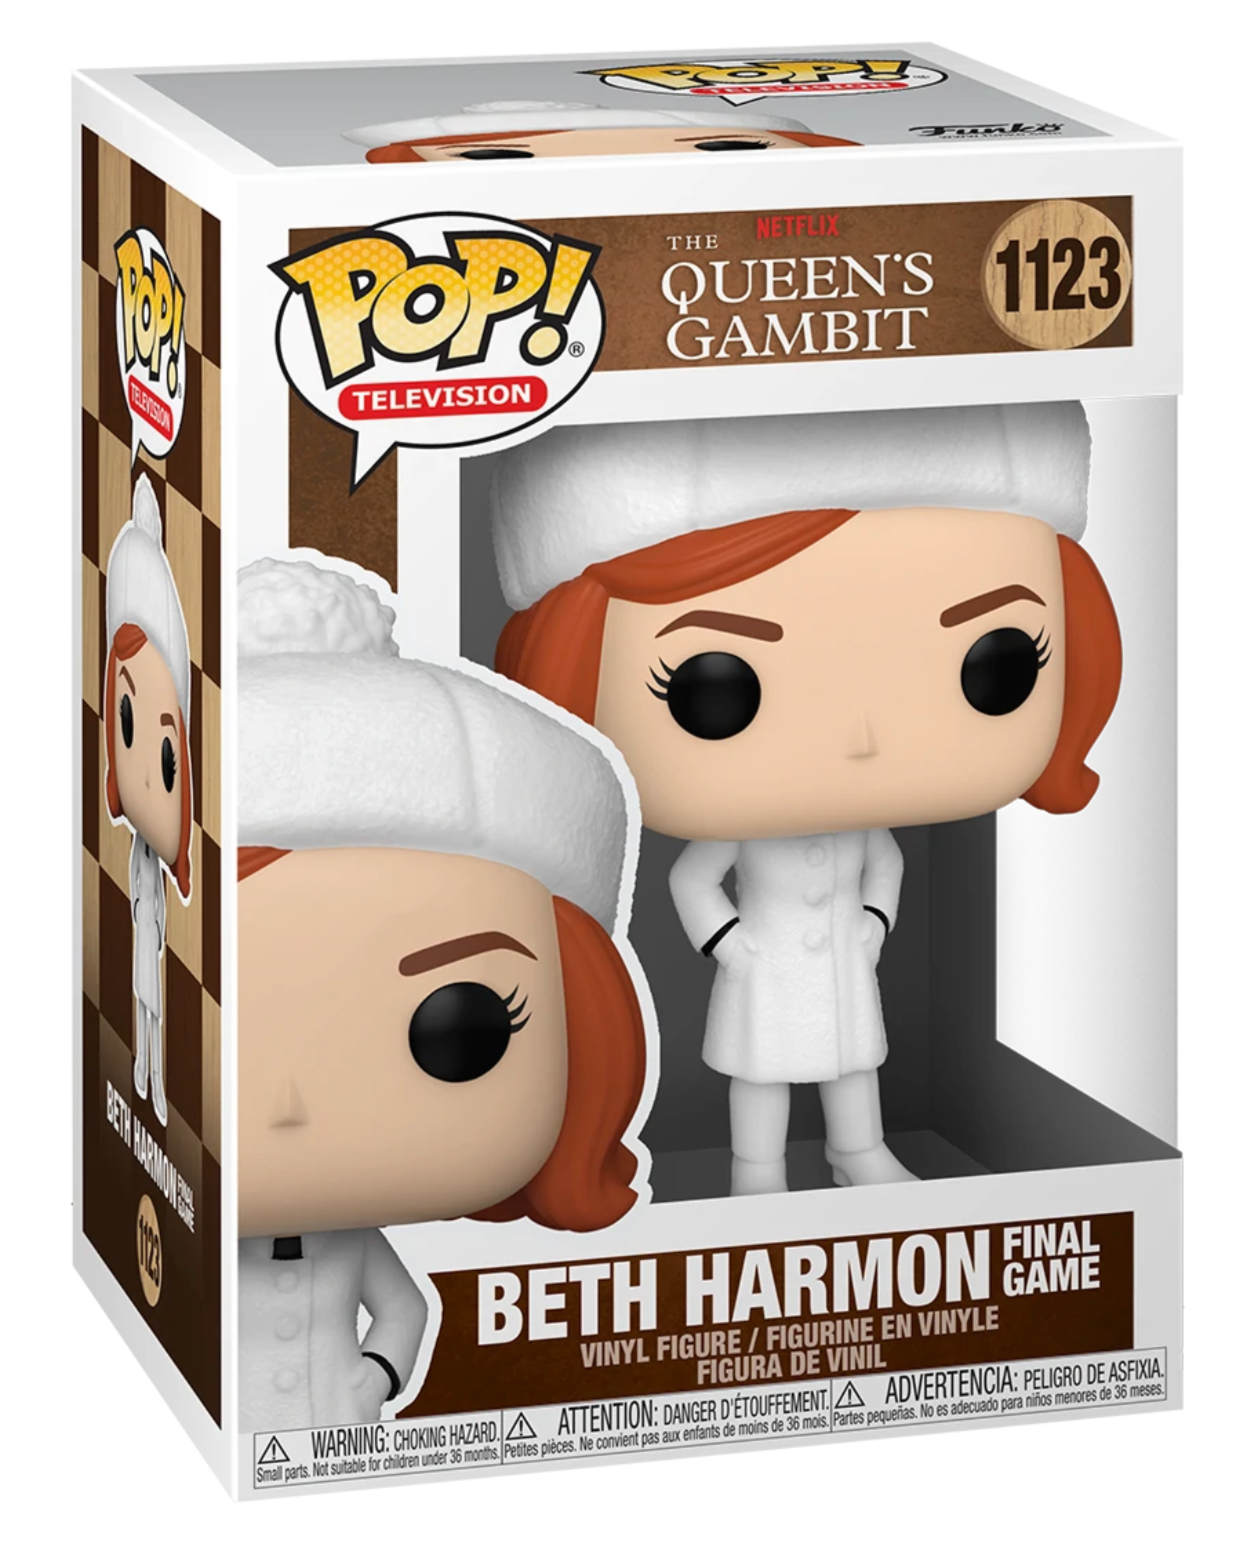 Queen's Gambit: Beth Harmon Final Game Pop! Vinyl Figure (1123)